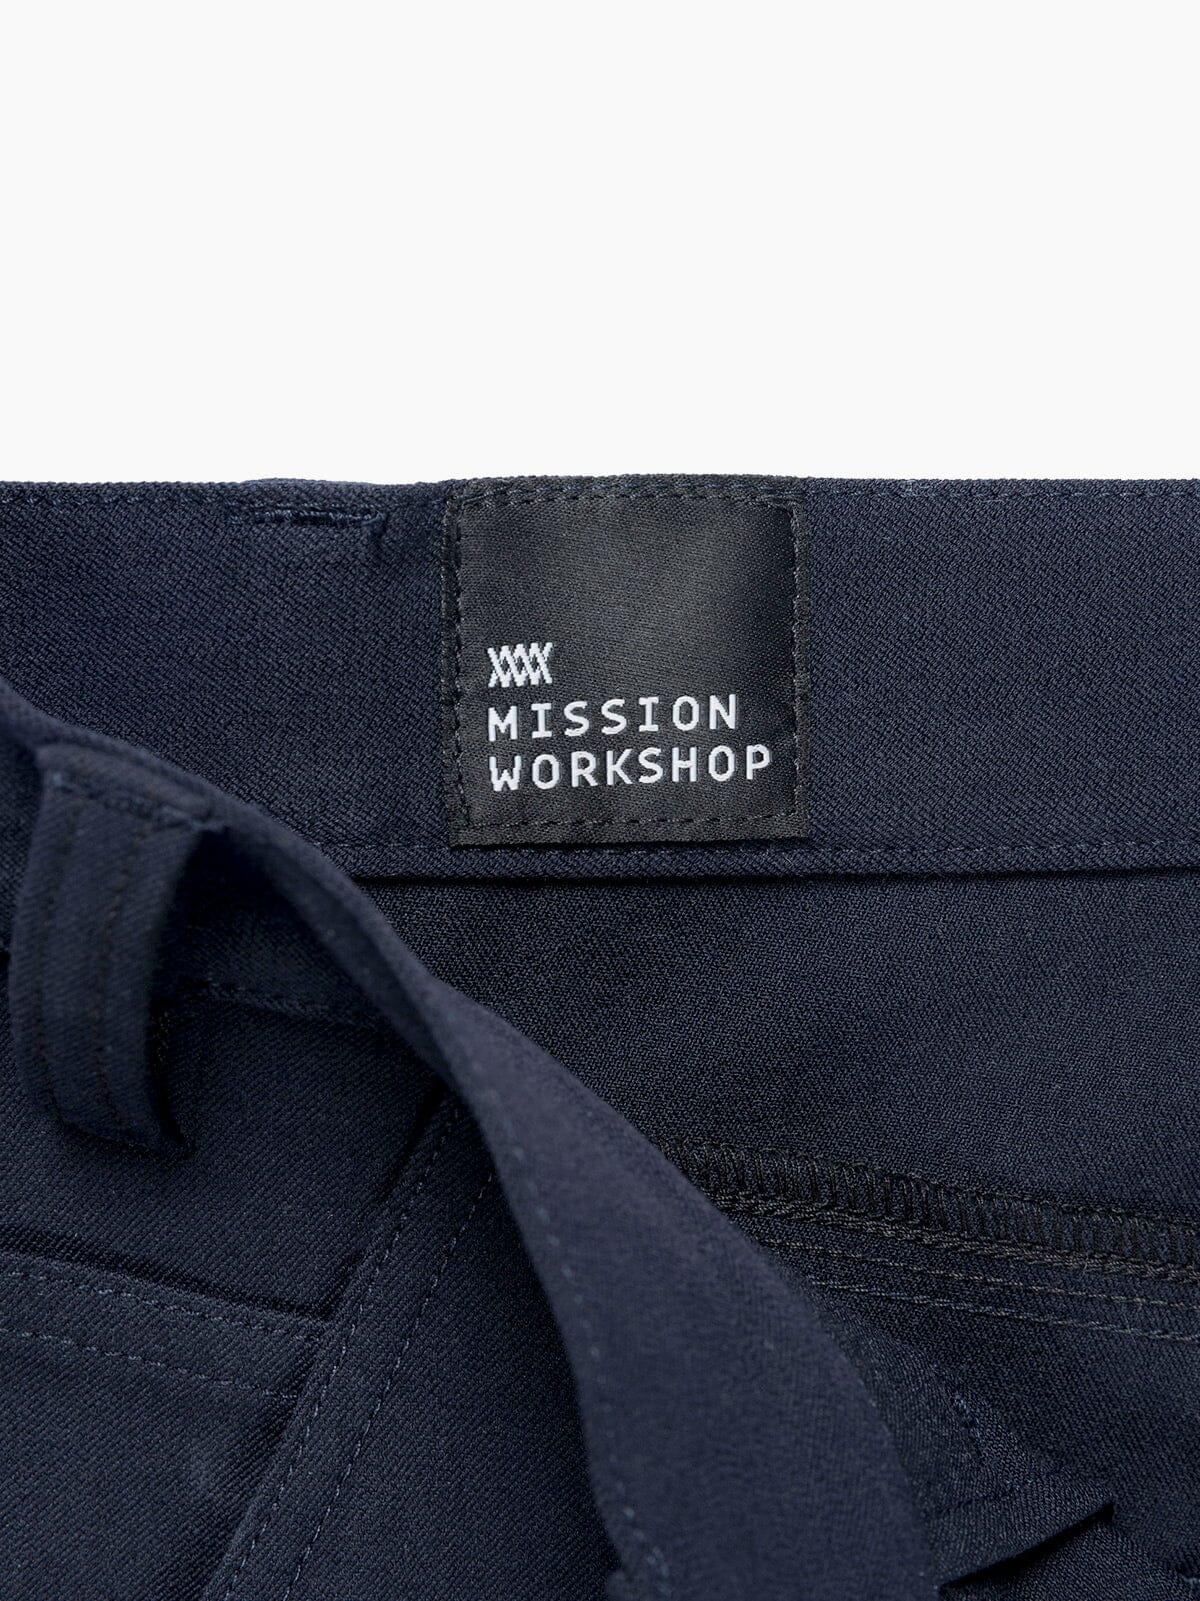 Paragon by Mission Workshop - Weatherproof Bags & Technical Apparel - San Francisco & Los Angeles - Construit pour durer - Garanti pour toujours